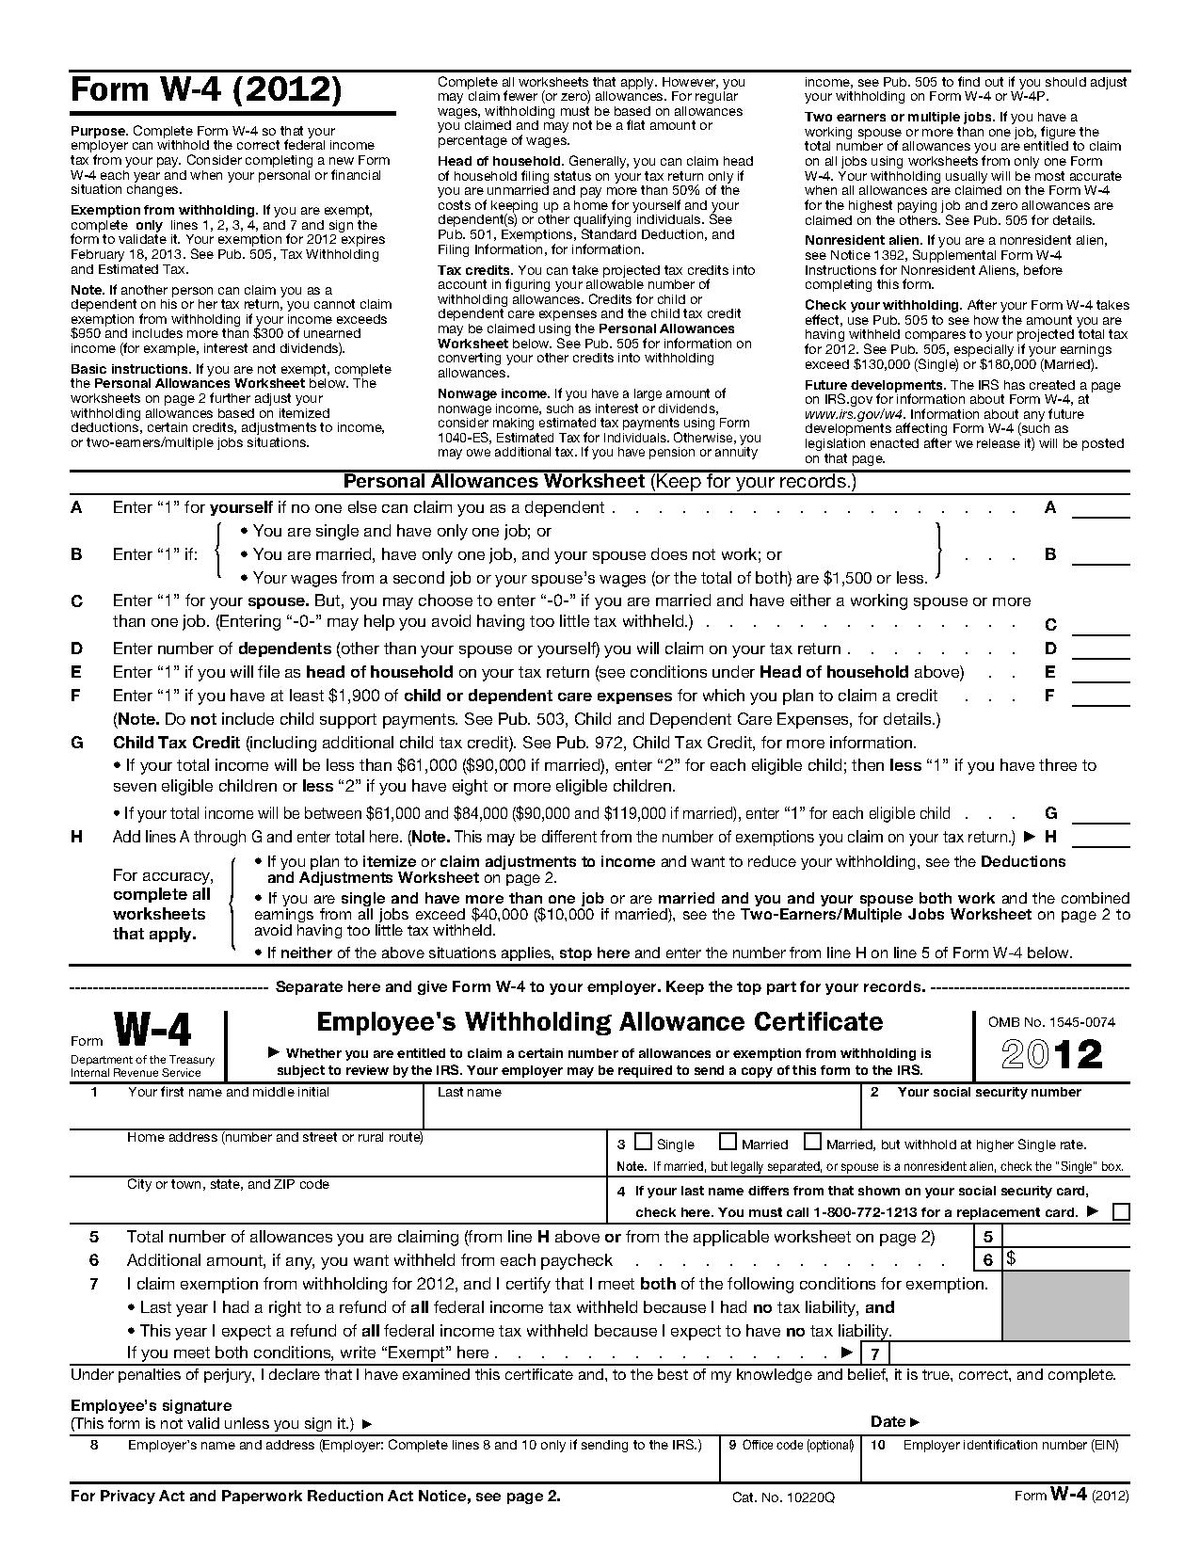 Form W-4 - Wikipedia - Form W 4 2013 Free Printable